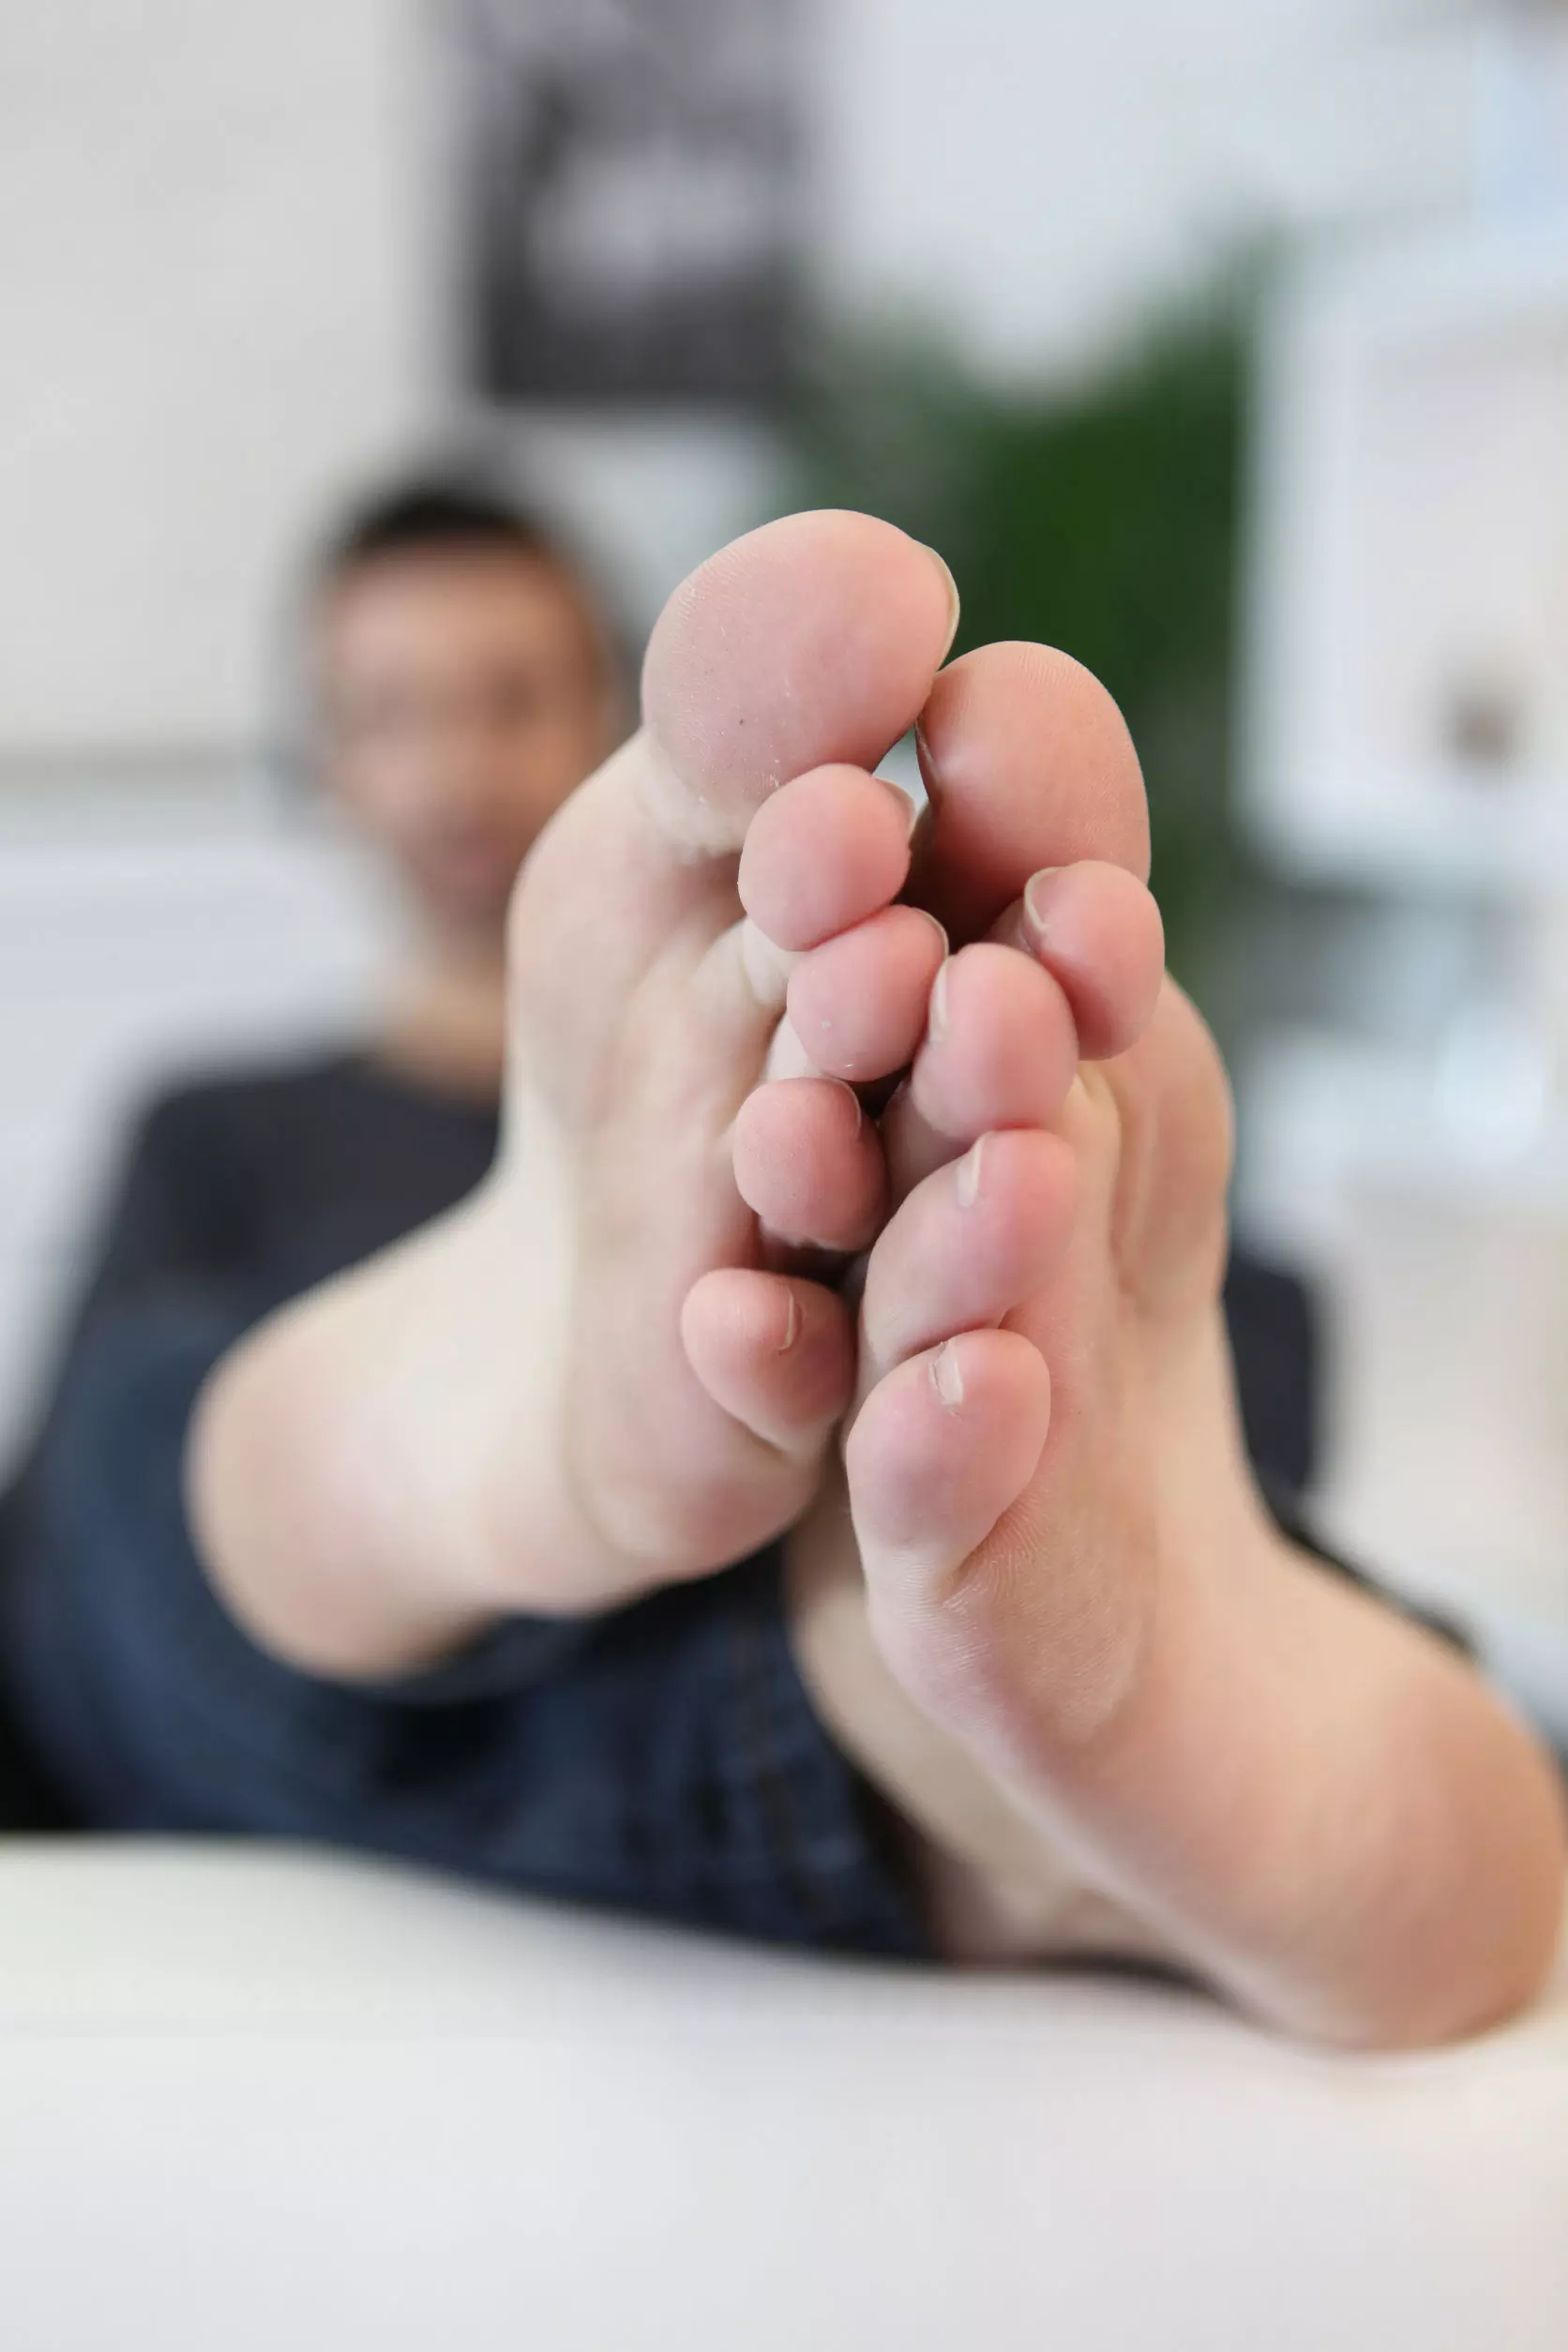 Falsos mitos sobre las durezas en los pies